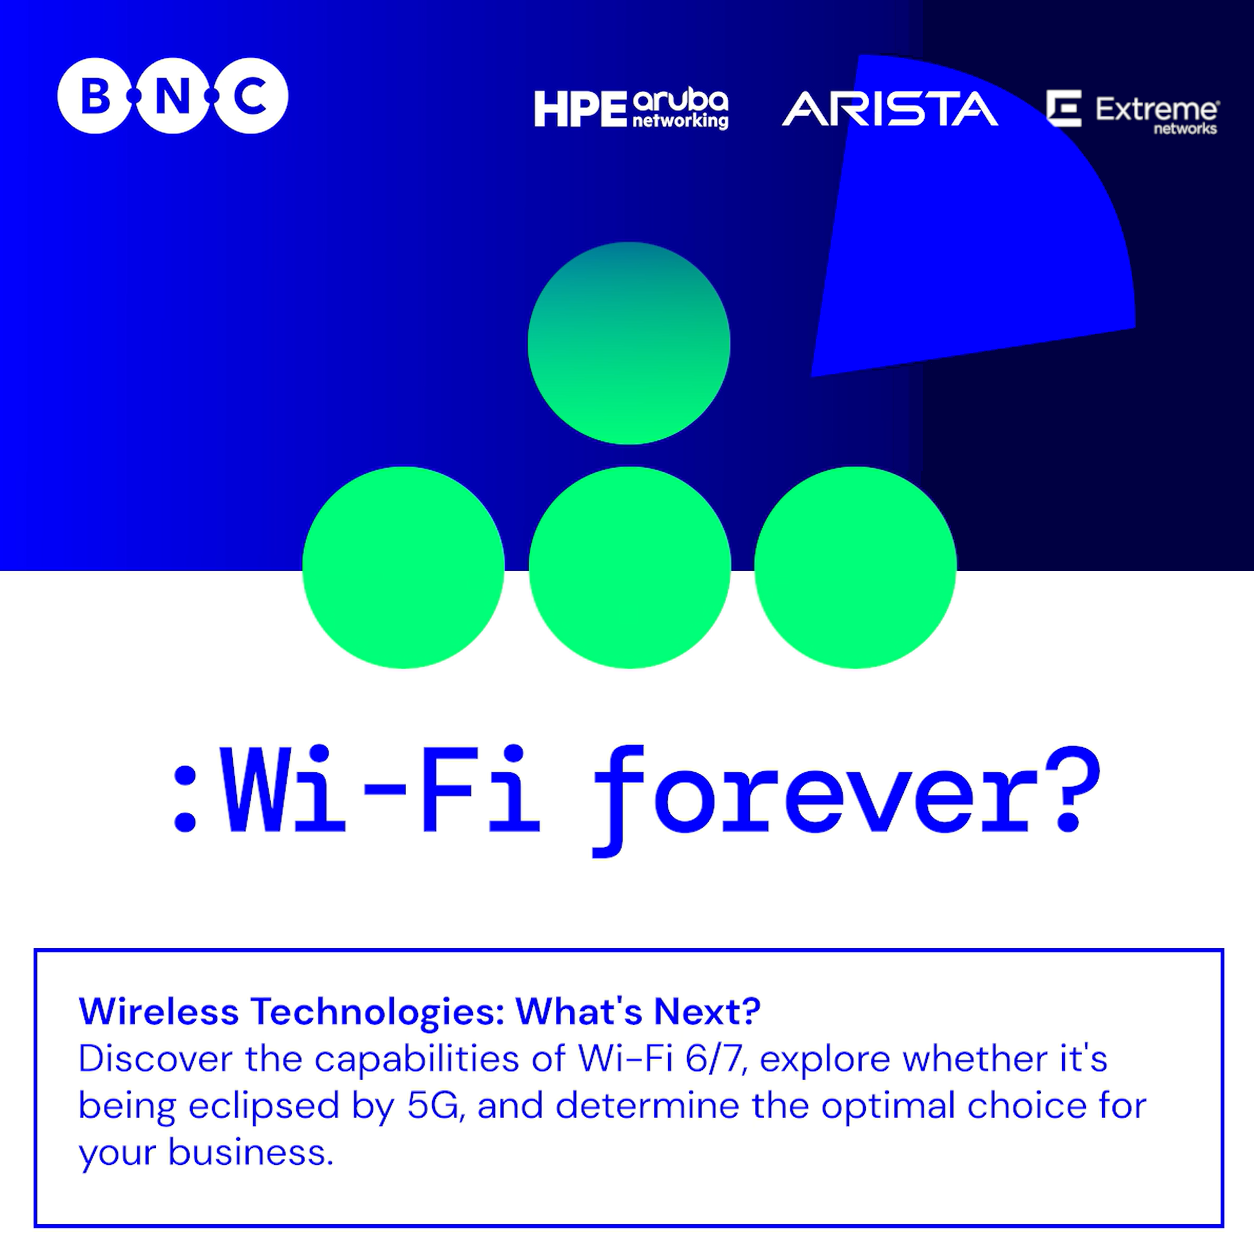 La nouvelle campagne « Wi-Fi Forever » offre un aperçu de l'avenir des technologies sans fil